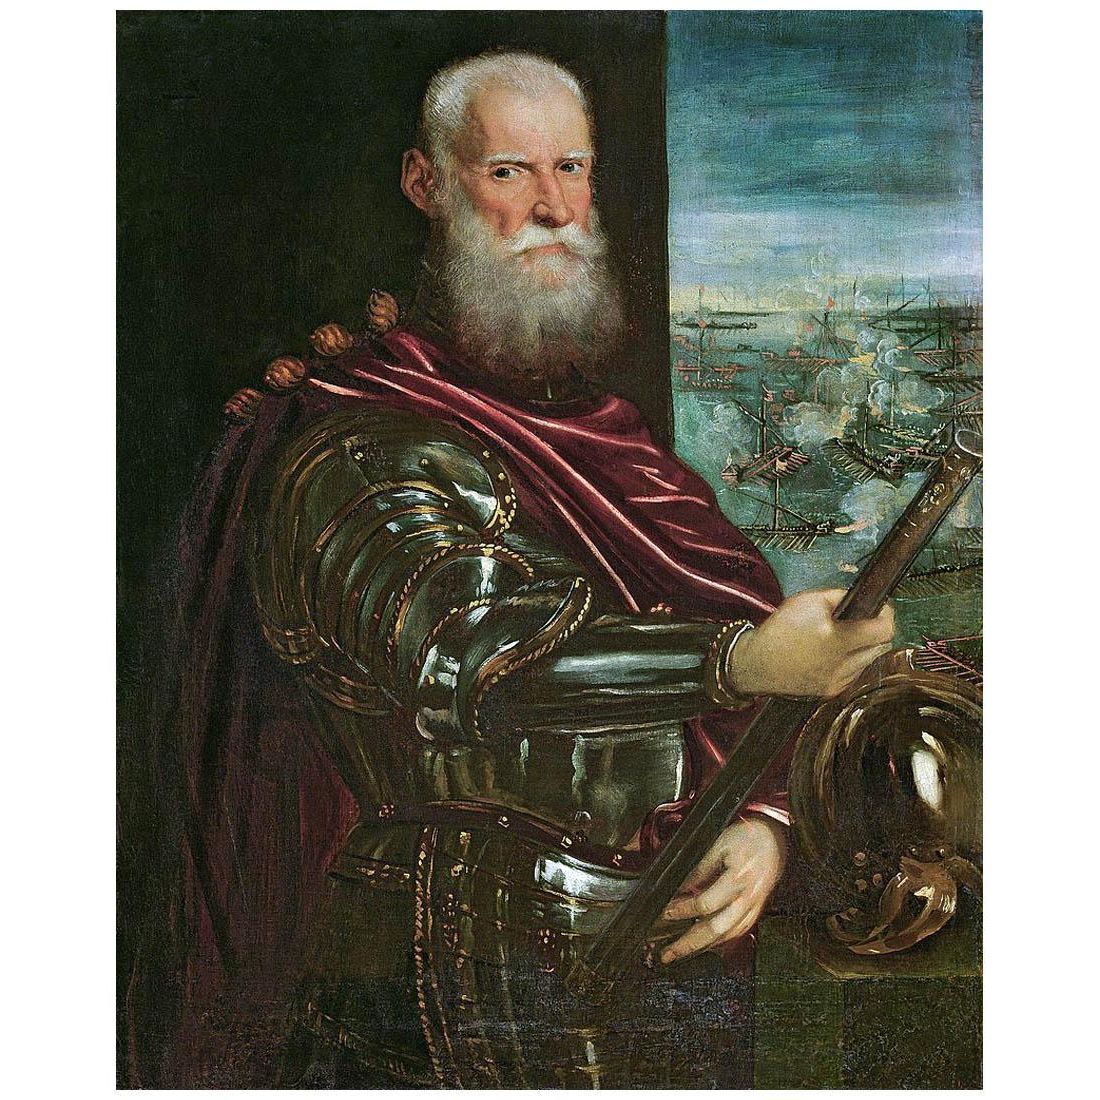 Tintoretto. Ritratto di Sebastiano Venier. 1571. KHM, Wien